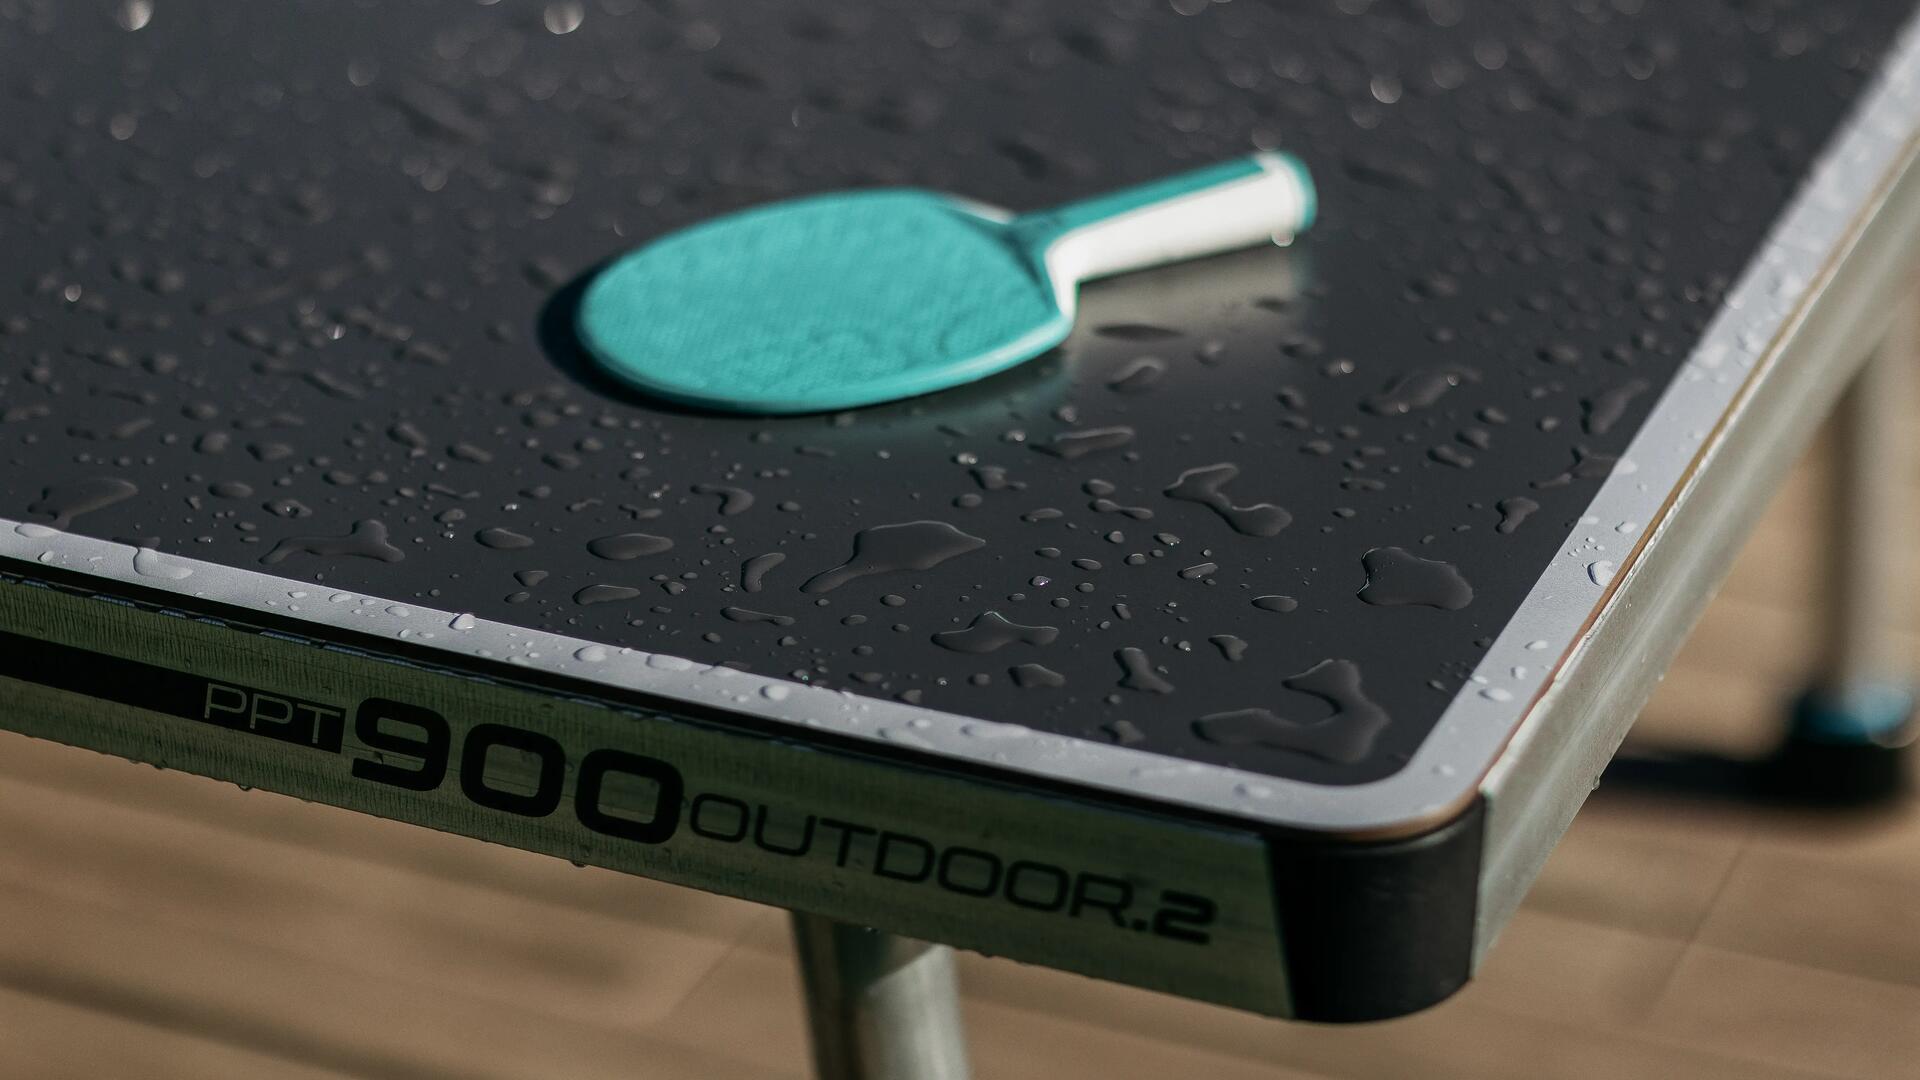 Raquette de ping pong poséE sur la table de tennis de table extérieure PPT900 OUTDOOR .2